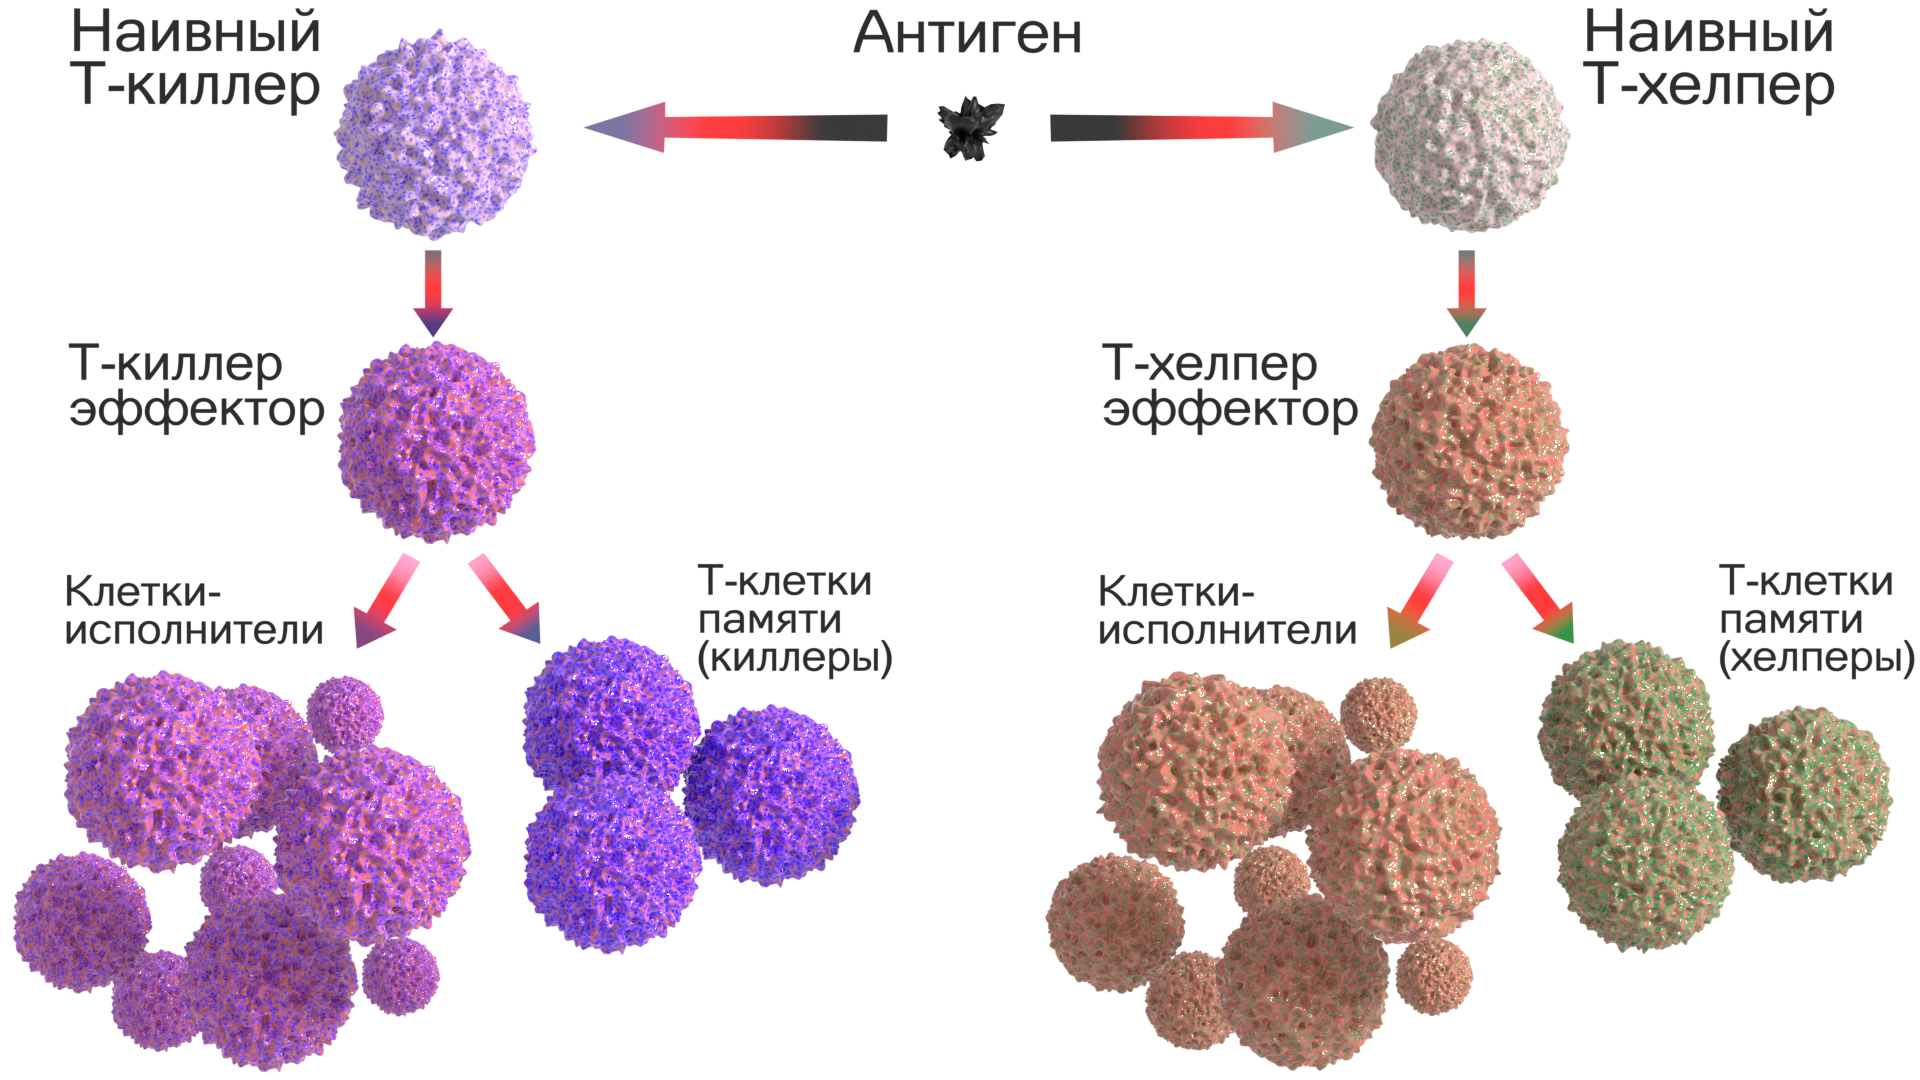 Действия лимфоцитов. Клетки памяти т-лимфоцитов. Клетки иммунной системы т-киллеры. Т лимфоциты т киллеры т хелперы т супрессоры. Т клетки иммунной памяти функция.